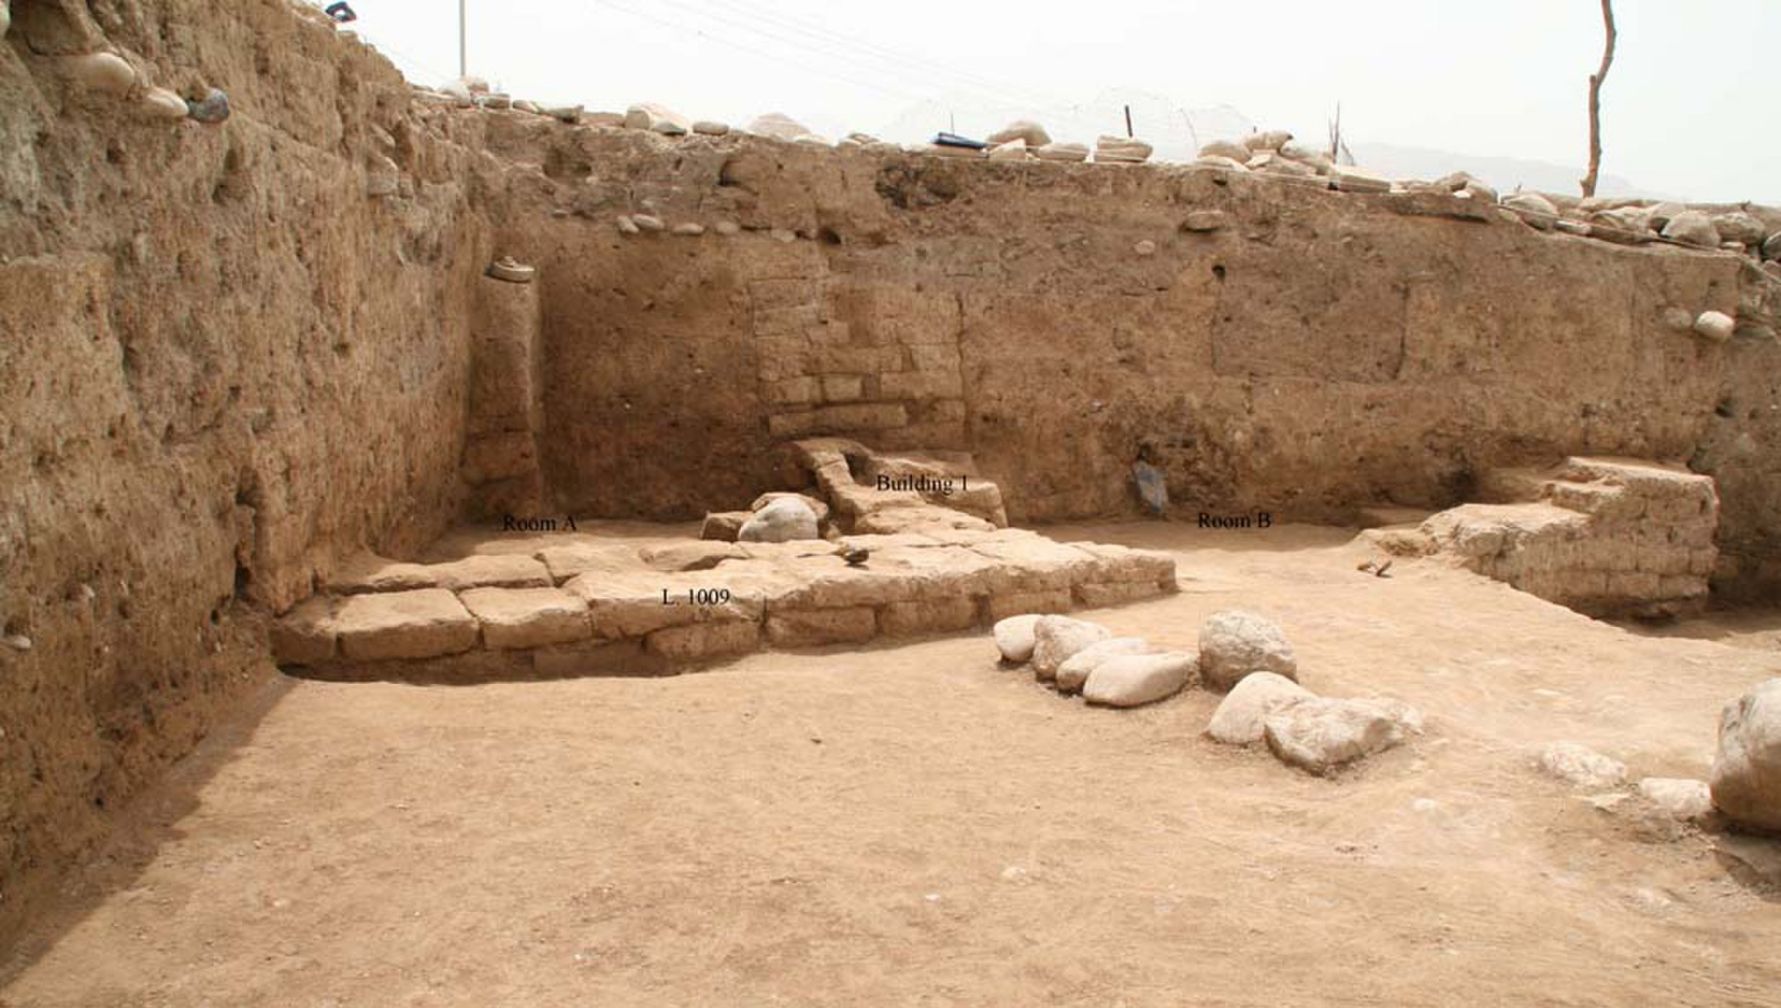 Arheolozi u regiji Kurdistan na sjeveru Iraka otkrili su drevni grad koji se zvao "Idu". Nalazište je bilo zauzeto još u neolitičkom razdoblju, kada se poljoprivreda prvi put pojavila na Bliskom istoku, a grad je dosegao svoj najveći razmjer između 3,300 i 2,900 godina. Zgrada prikazana ovdje je domaća građevina, s najmanje dvije sobe, koja može datirati u relativno kasno doba života grada, možda prije oko 2,000 godina kada je Partsko Carstvo kontroliralo područje.